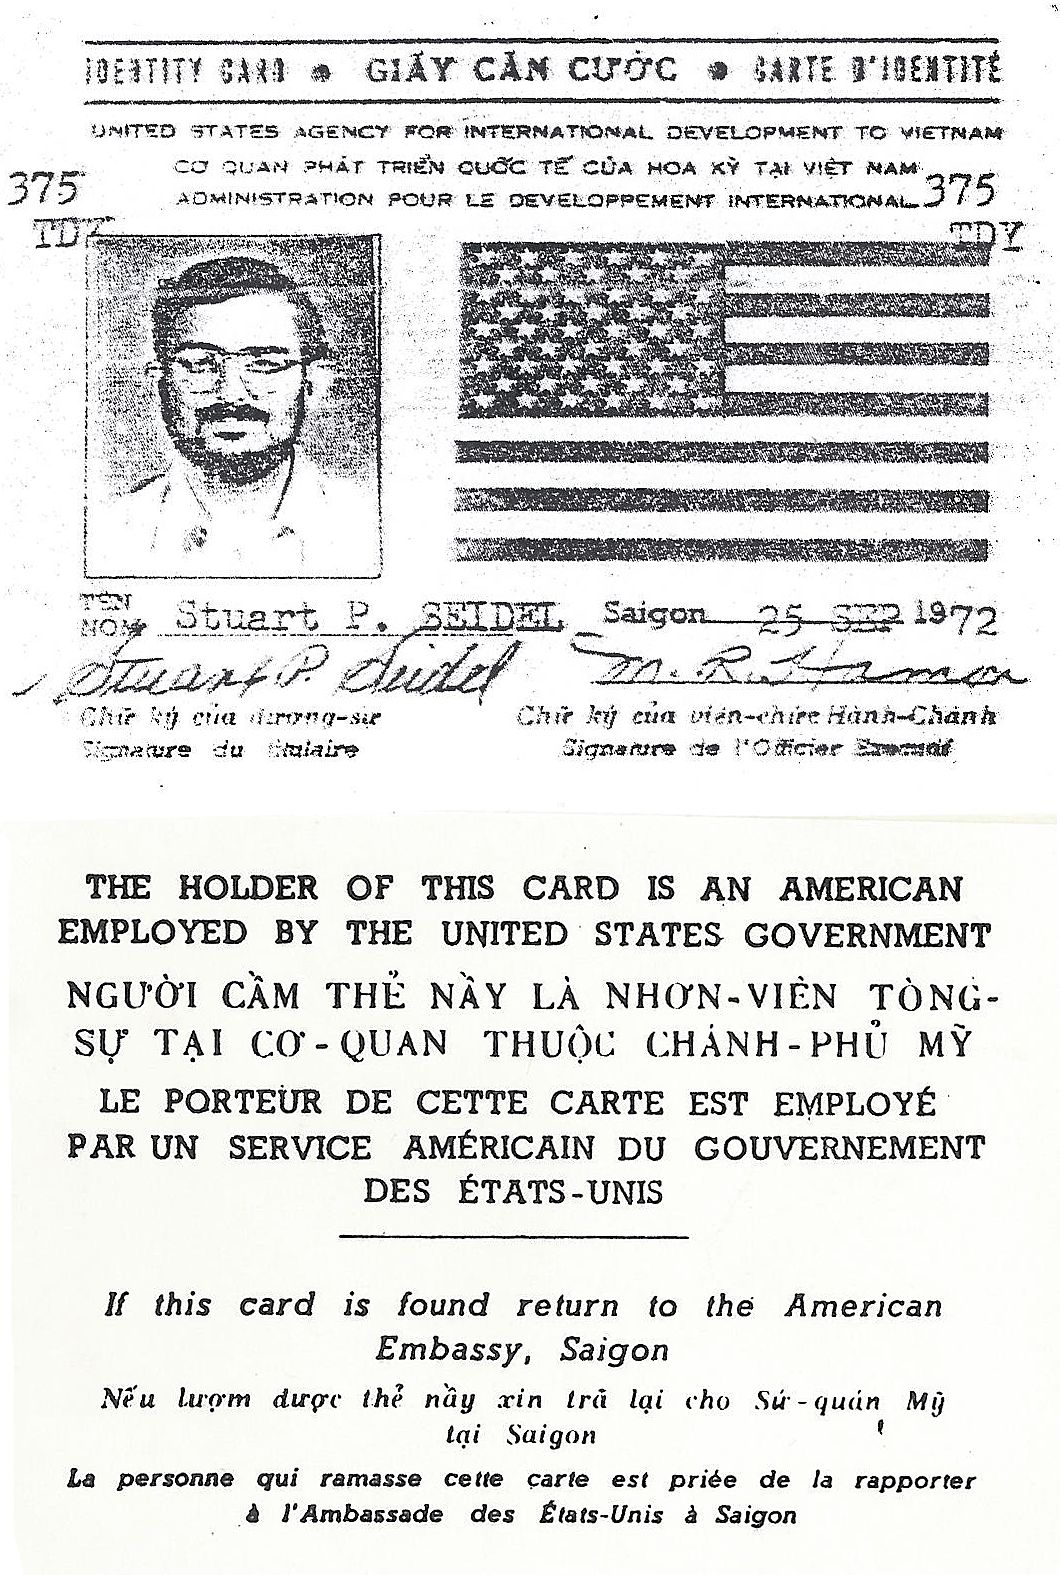 U.S. Customs in Vietnam